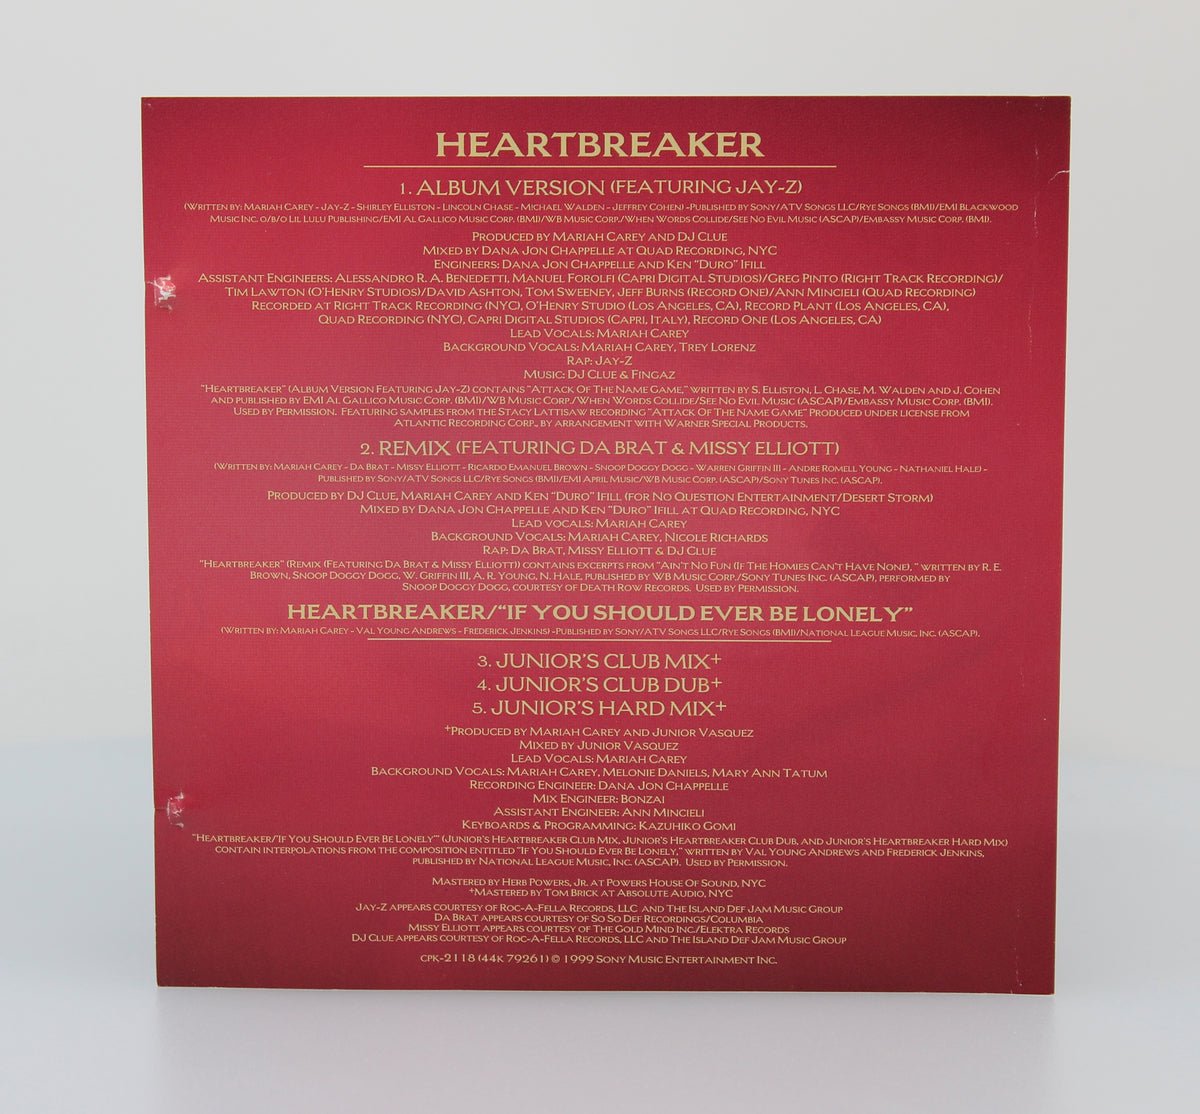 Mariah – Heartbreaker, CD, Maxi-Single, South Korea 1999 (CD 607)